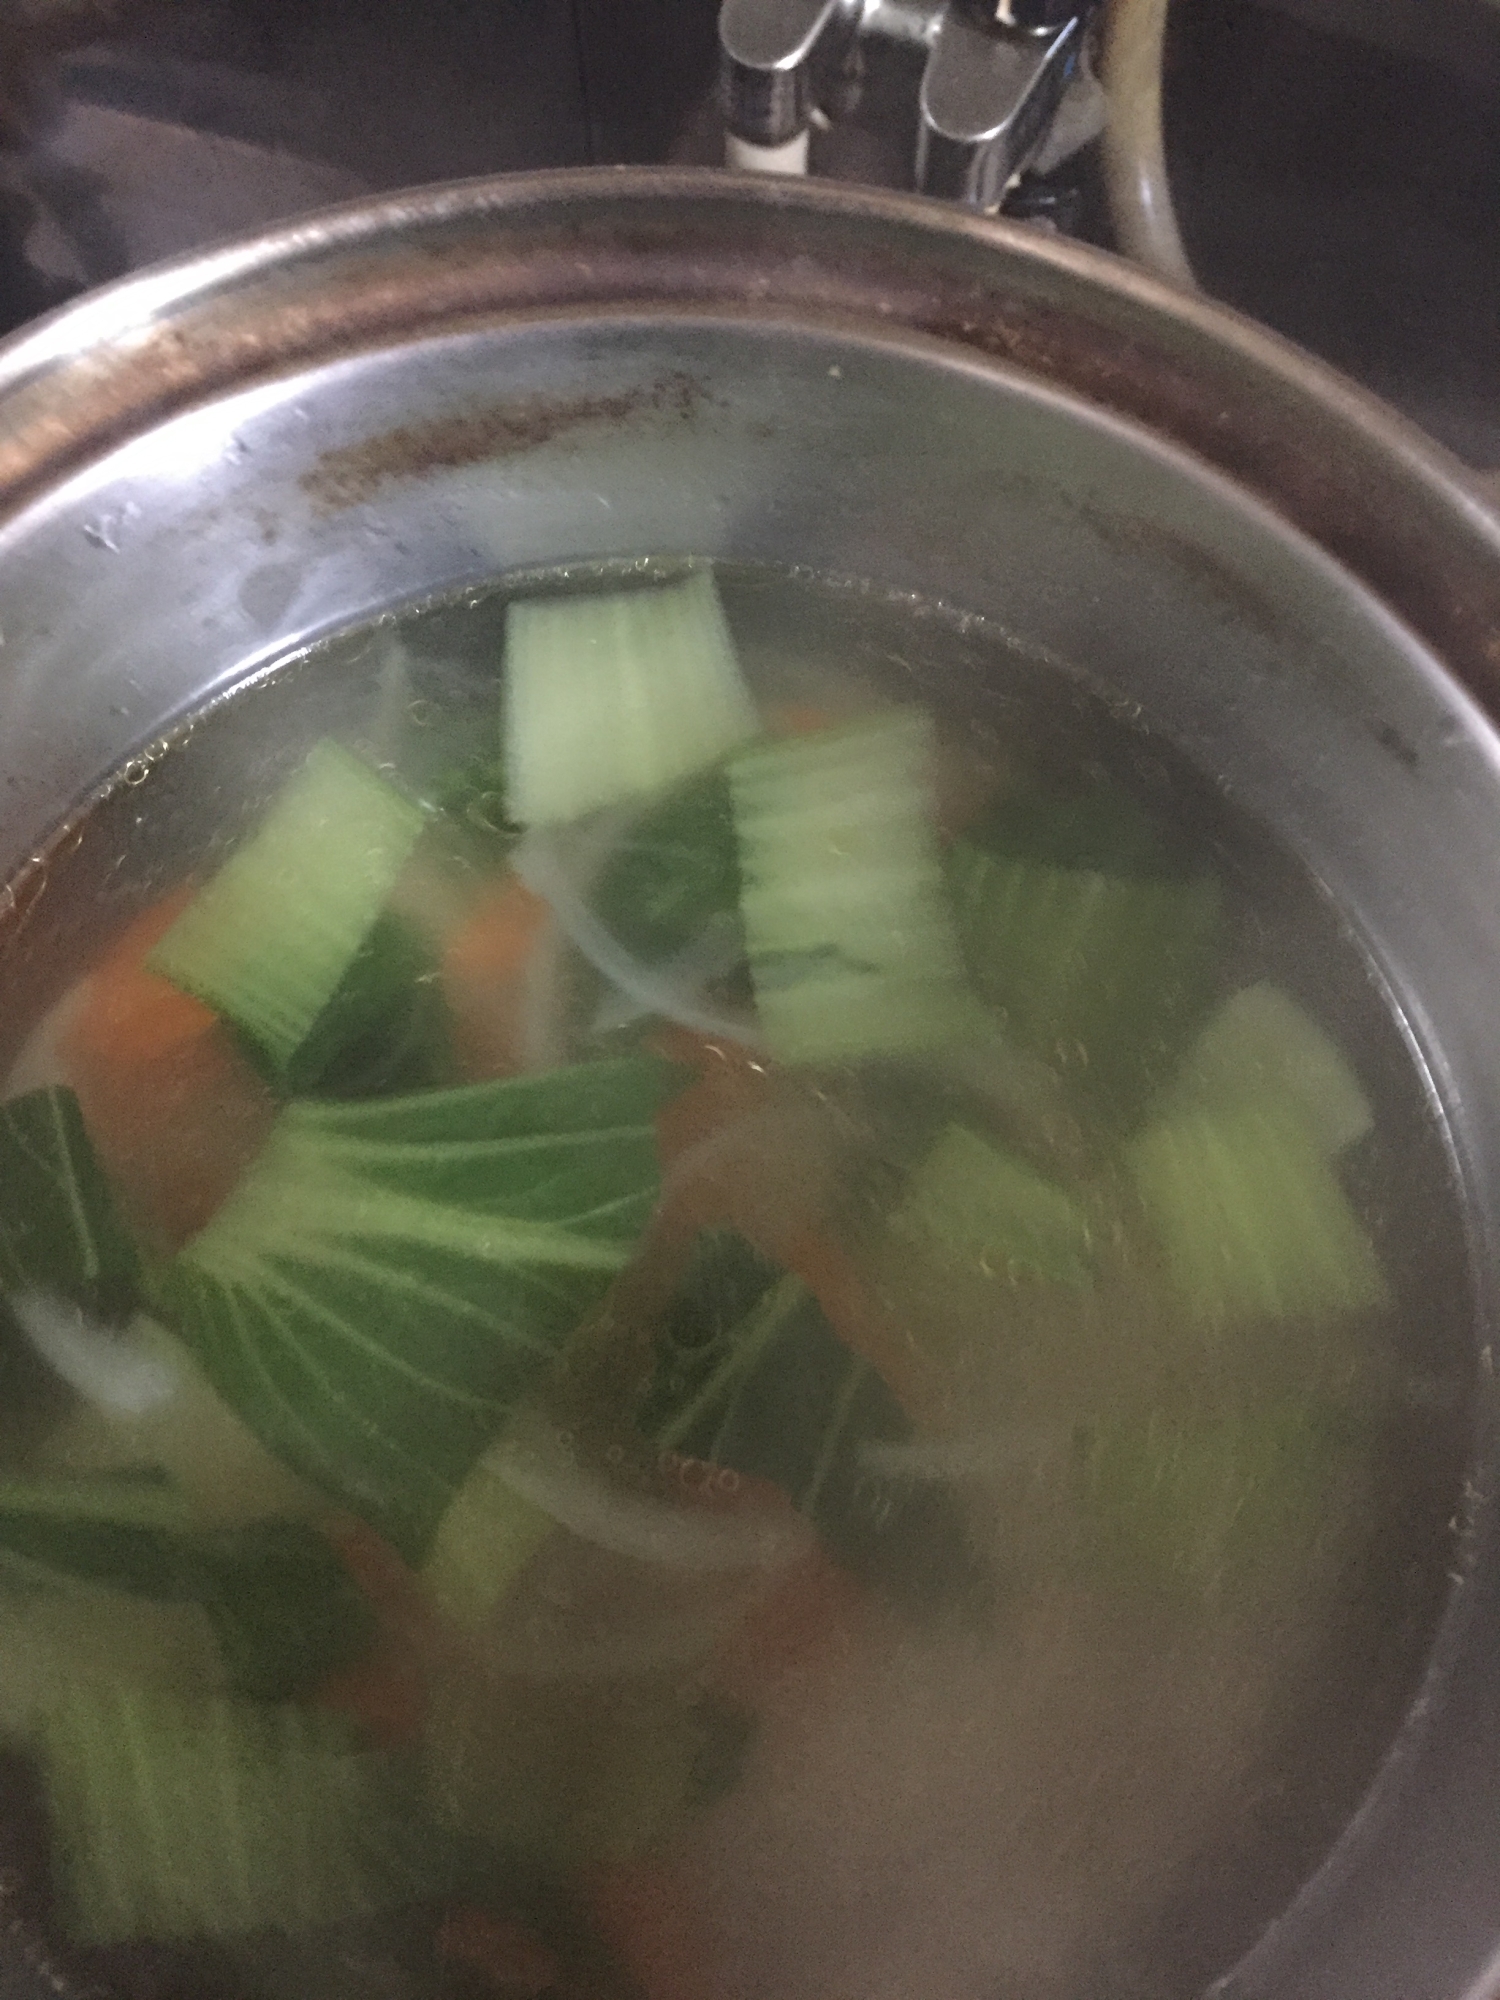 青梗菜の中華スープ